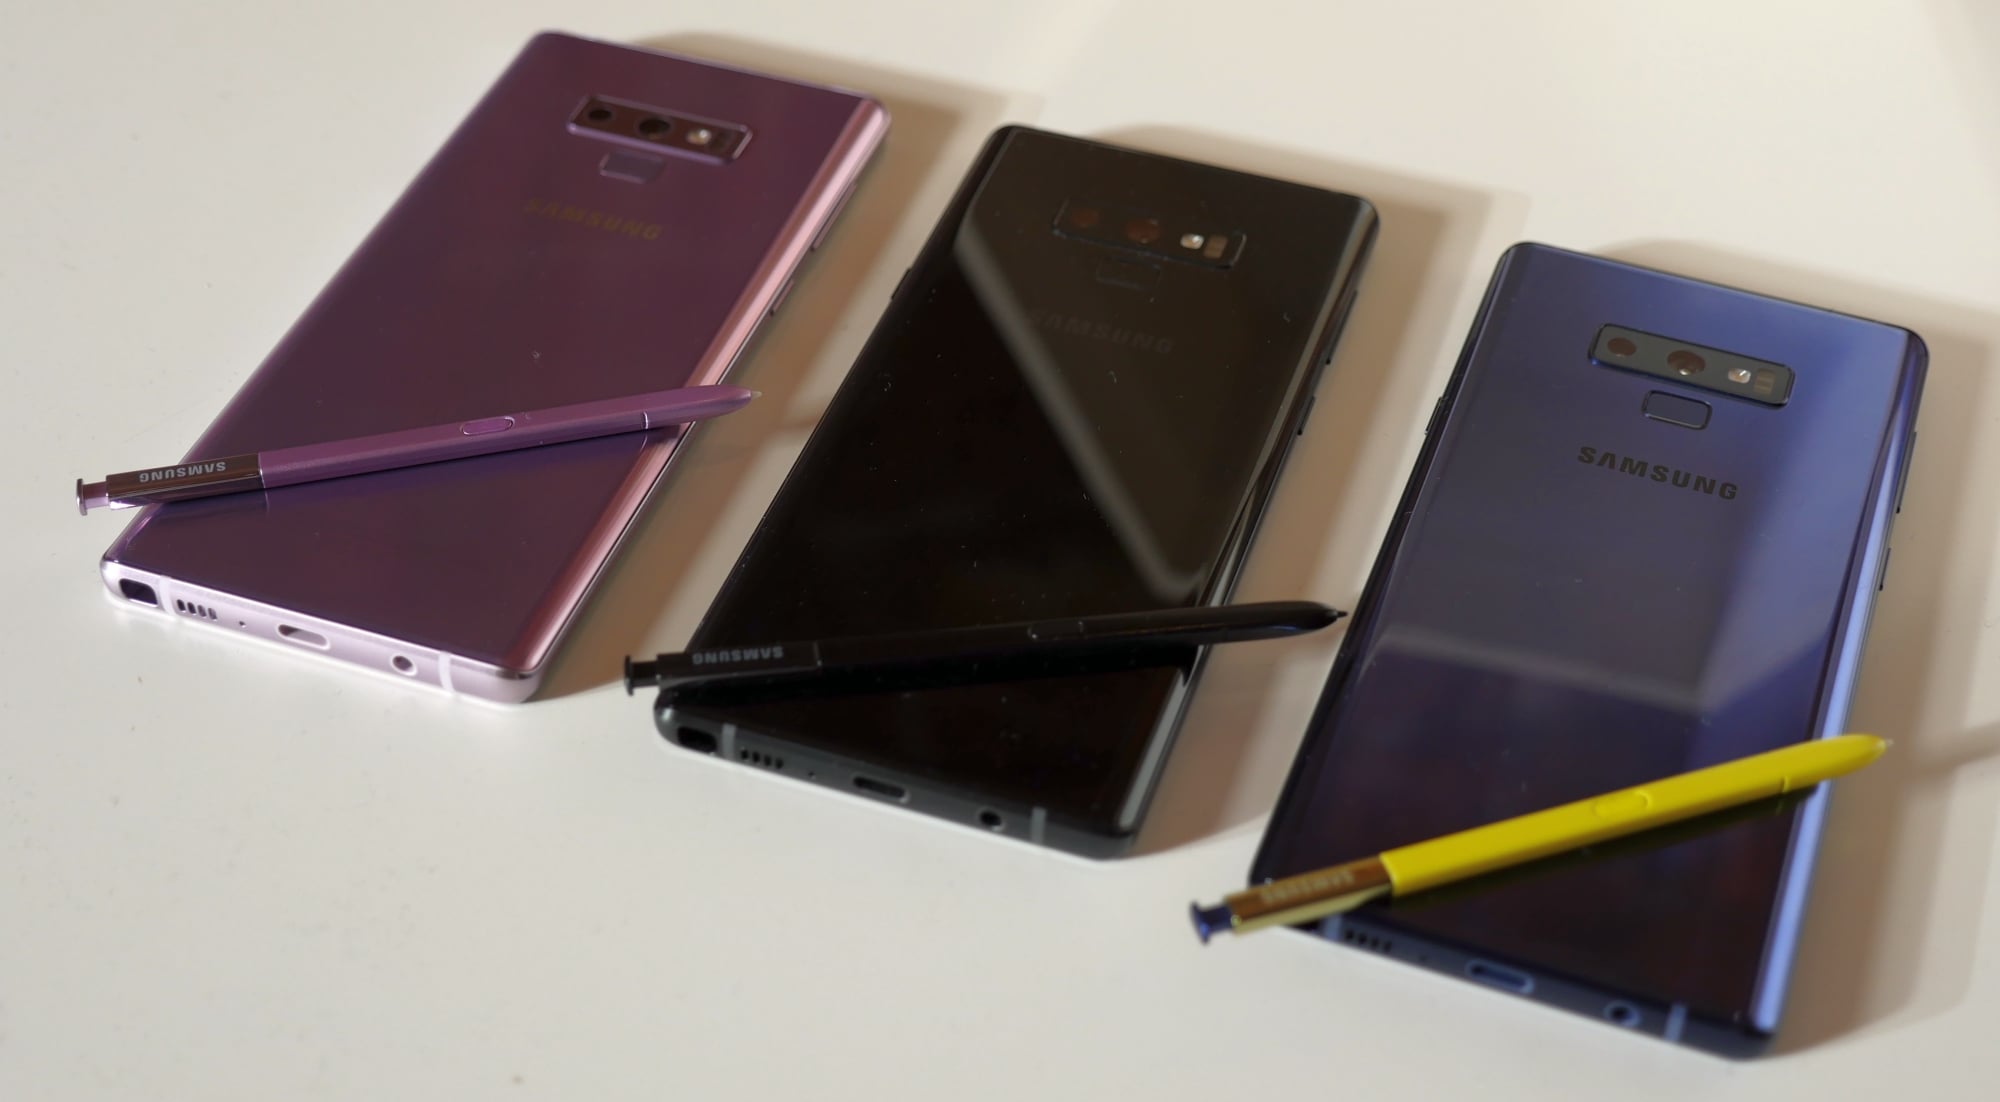 Galaxy Note 9 появится на рынке в четырех цветовых версиях: Midnight Black, Ocean Blue, Lavender Purple и Metallic Copper - к сожалению, последняя будет недоступна в Европе, а значит и в Польше